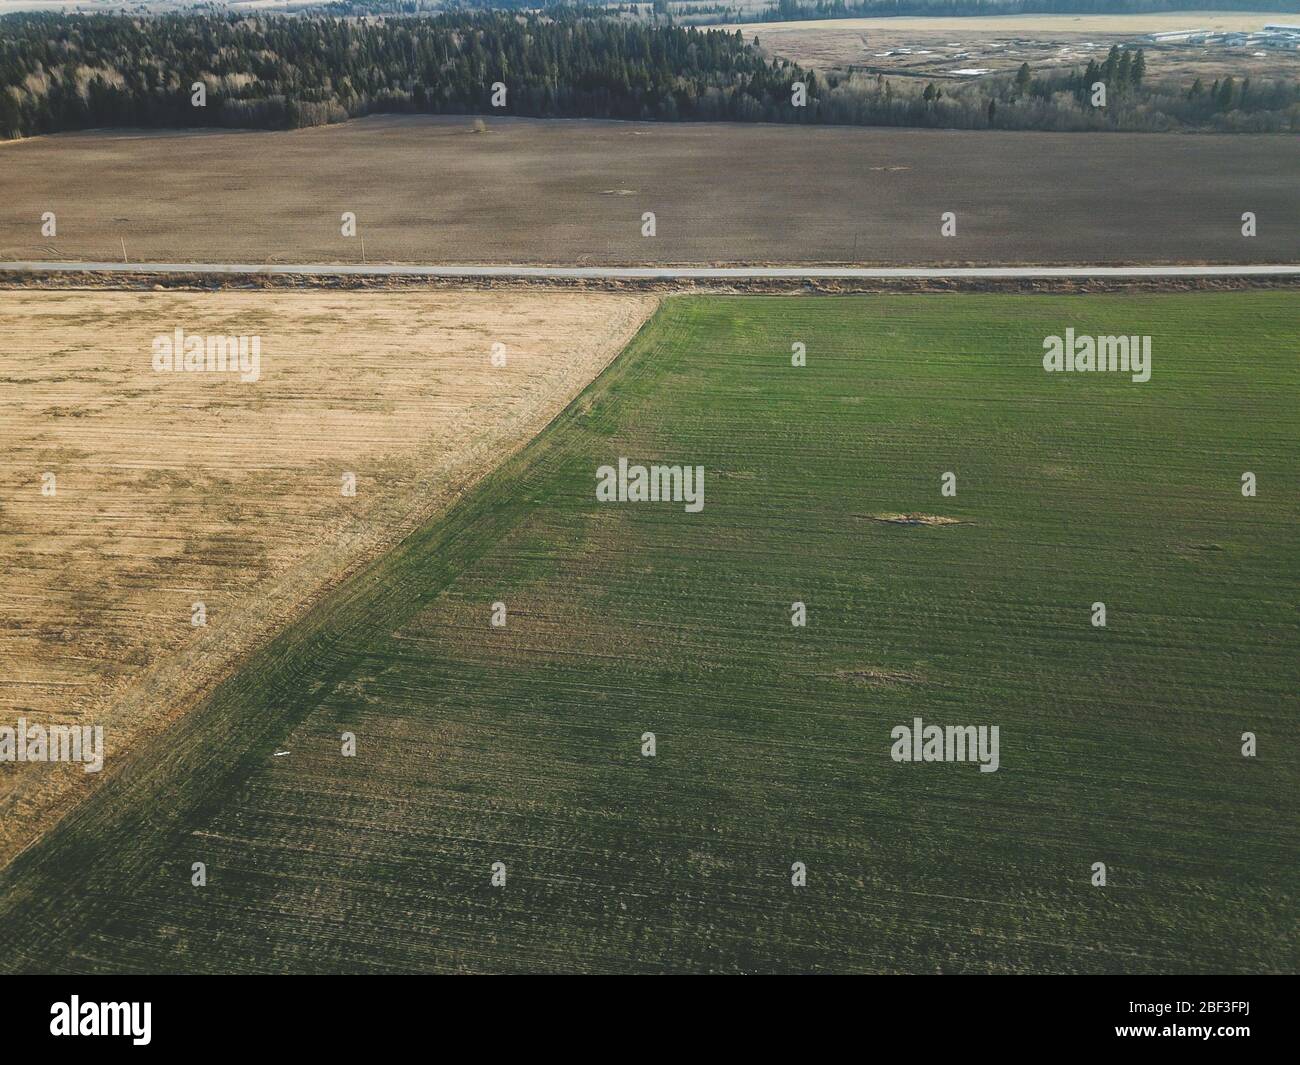 Vista aérea de la carretera y campos agrícolas. Paisaje de pradera con calzada Foto de stock